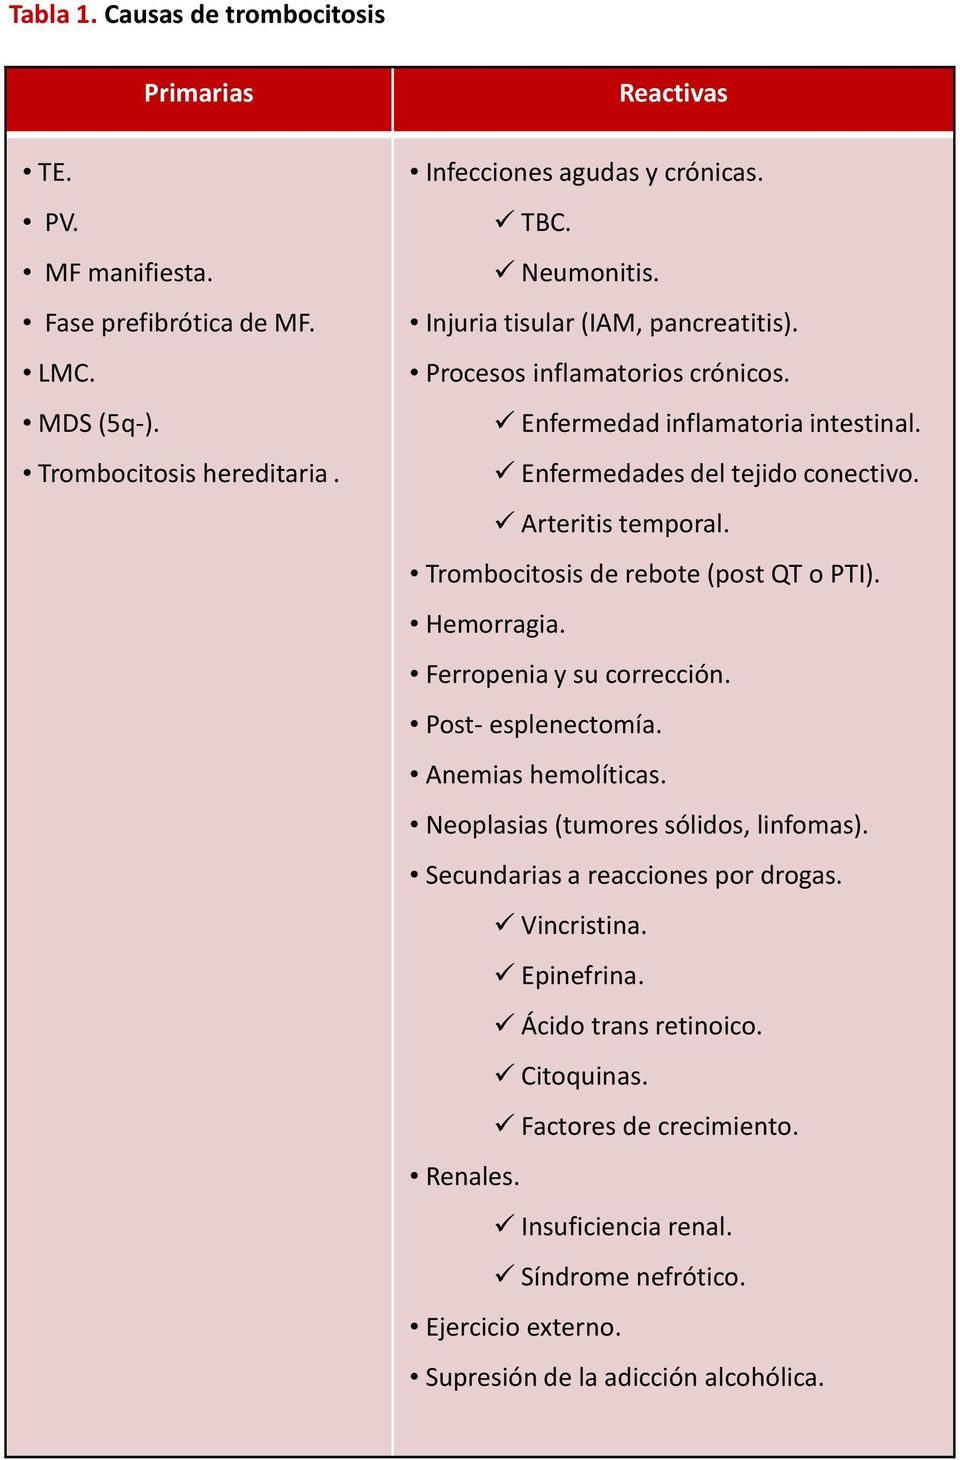 Trombocitosis de rebote (post QT o PTI). Hemorragia. Ferropenia y su corrección. Post- esplenectomía. Anemias hemolíticas. Neoplasias (tumores sólidos, linfomas).